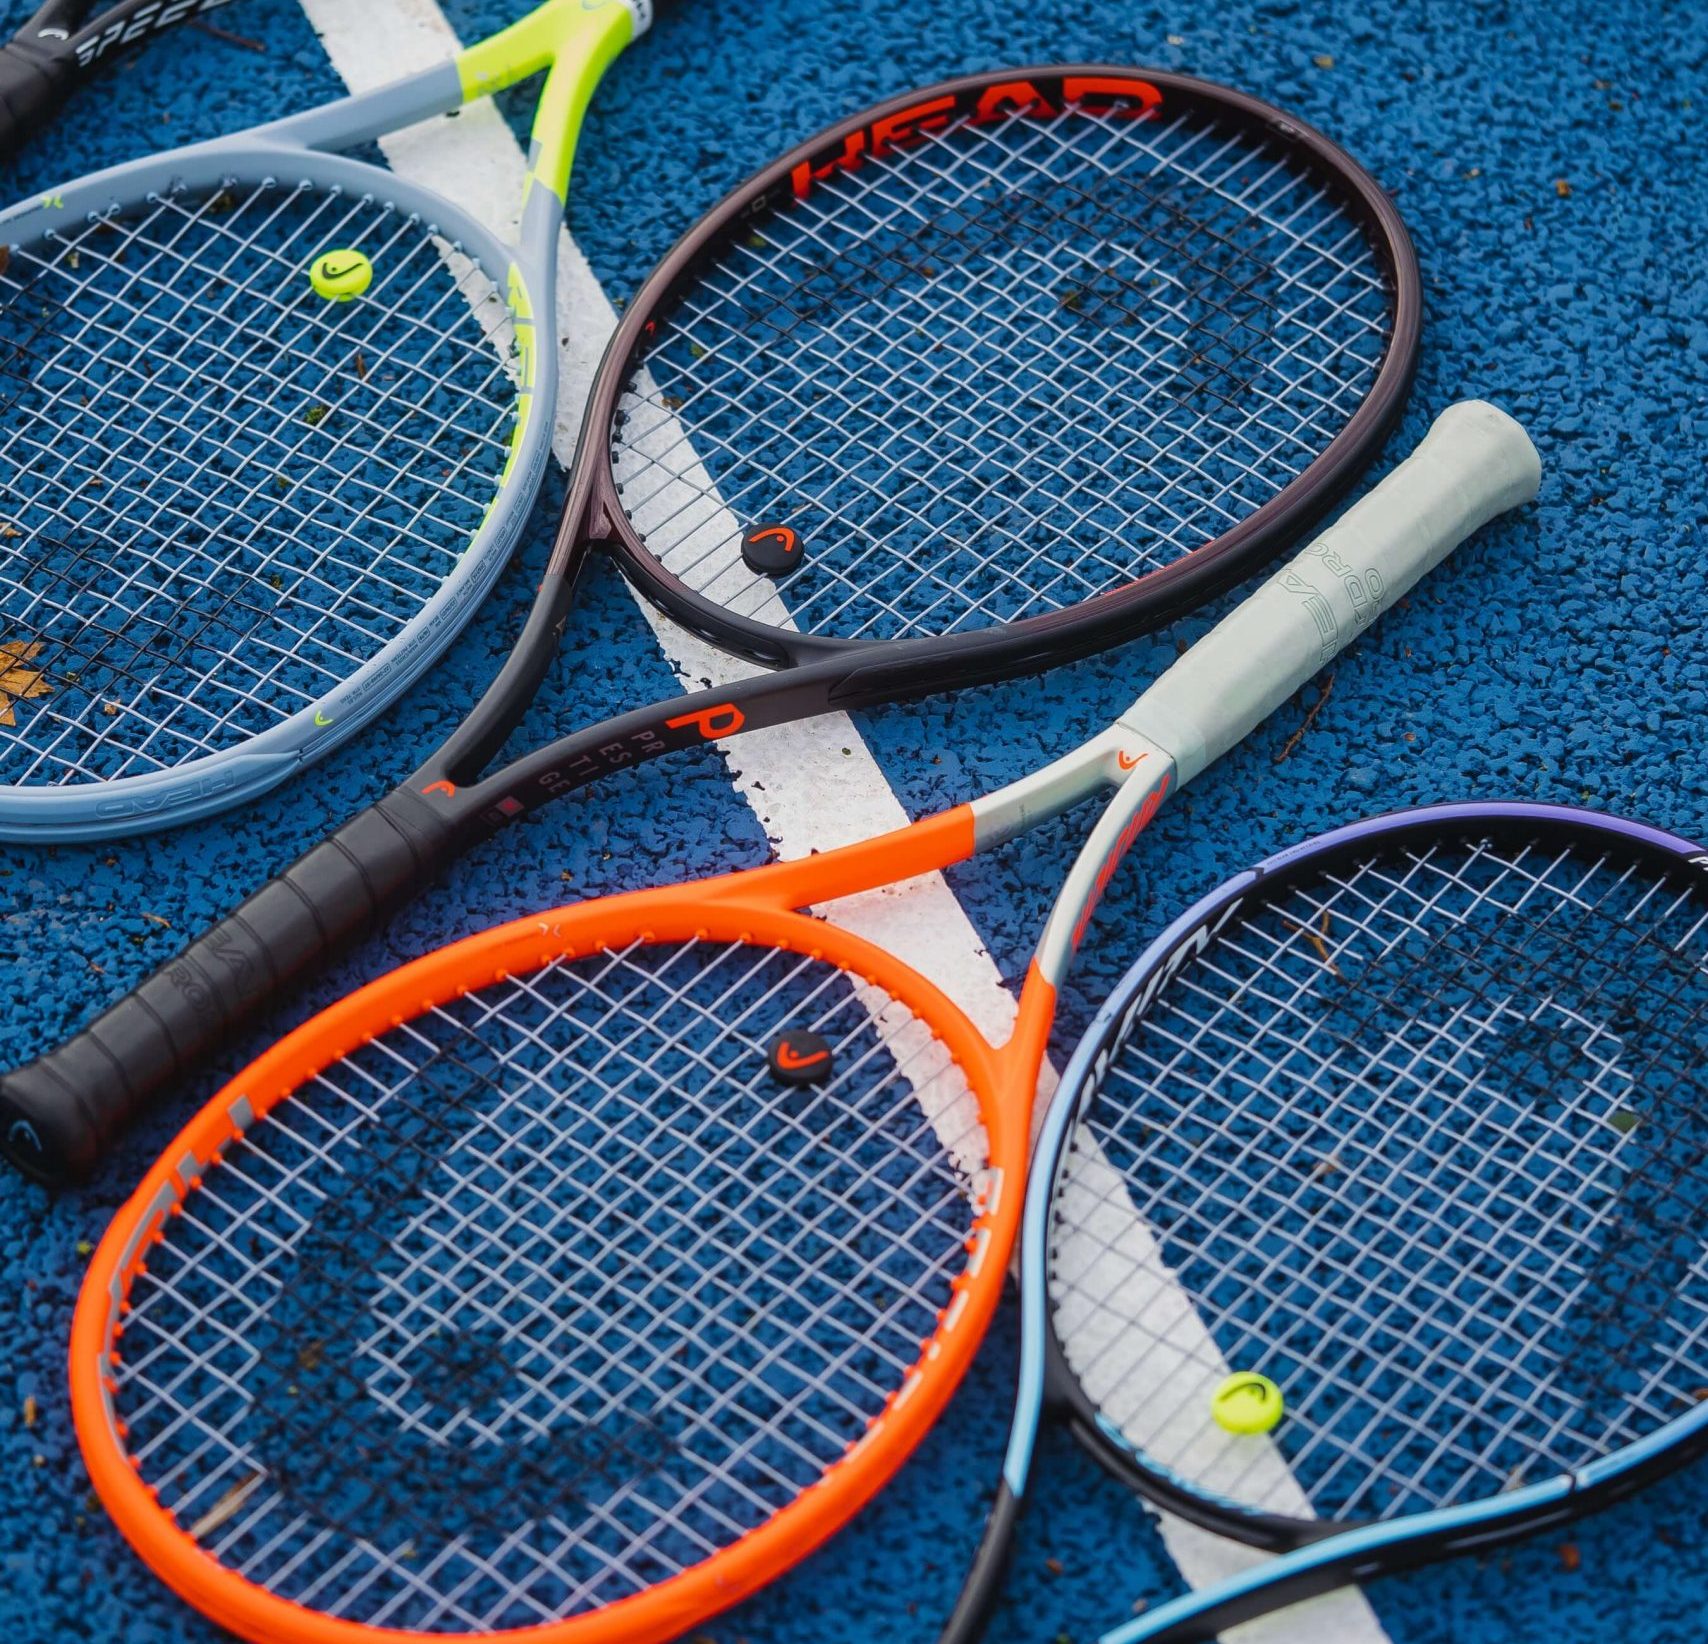 Conheça os 10 esportes de raquete mais populares do mundo